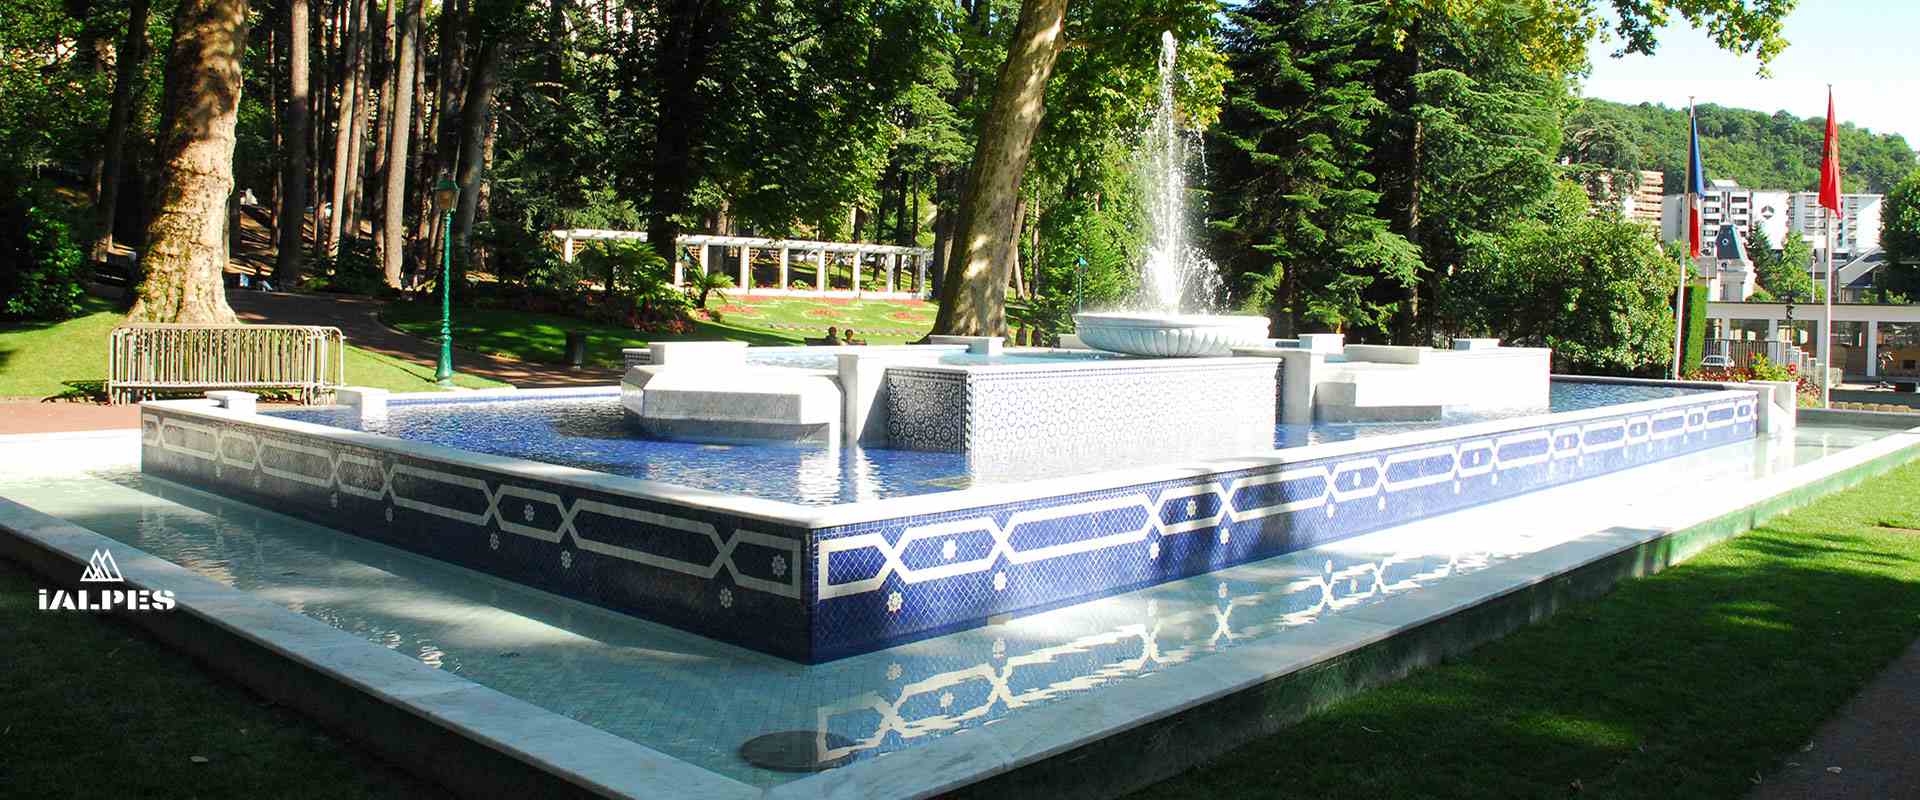 Fontaine au Parc Thermale d'Aix-les-Bains en Savoie